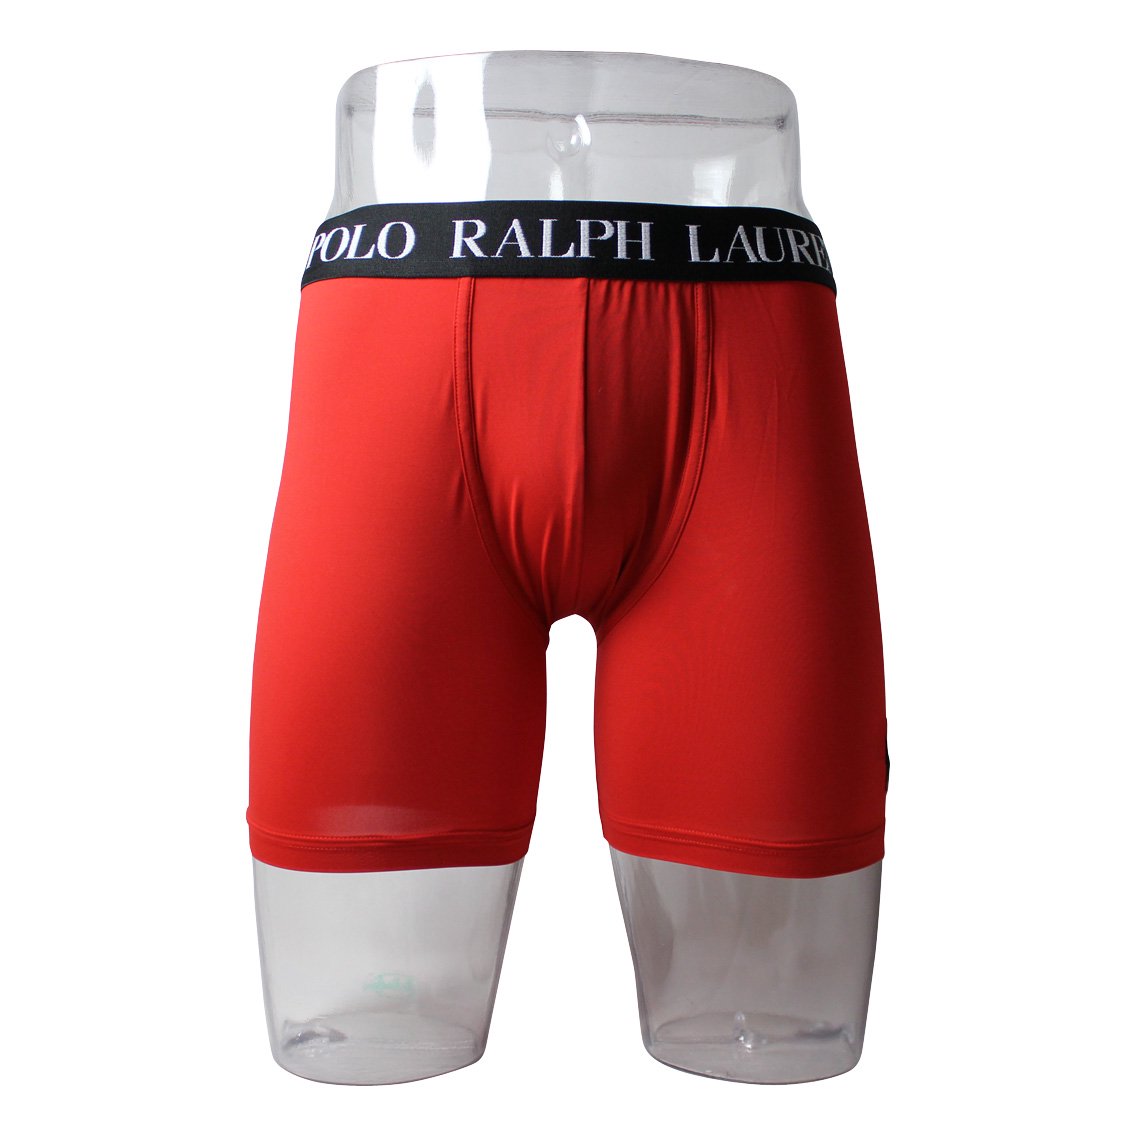 [LMB2SR-JRD] Polo ポロ ラルフローレン ボクサーパンツ メンズ アンダーウェア インナー 男性 下着 ブランド おすすめ 人気 プレゼント